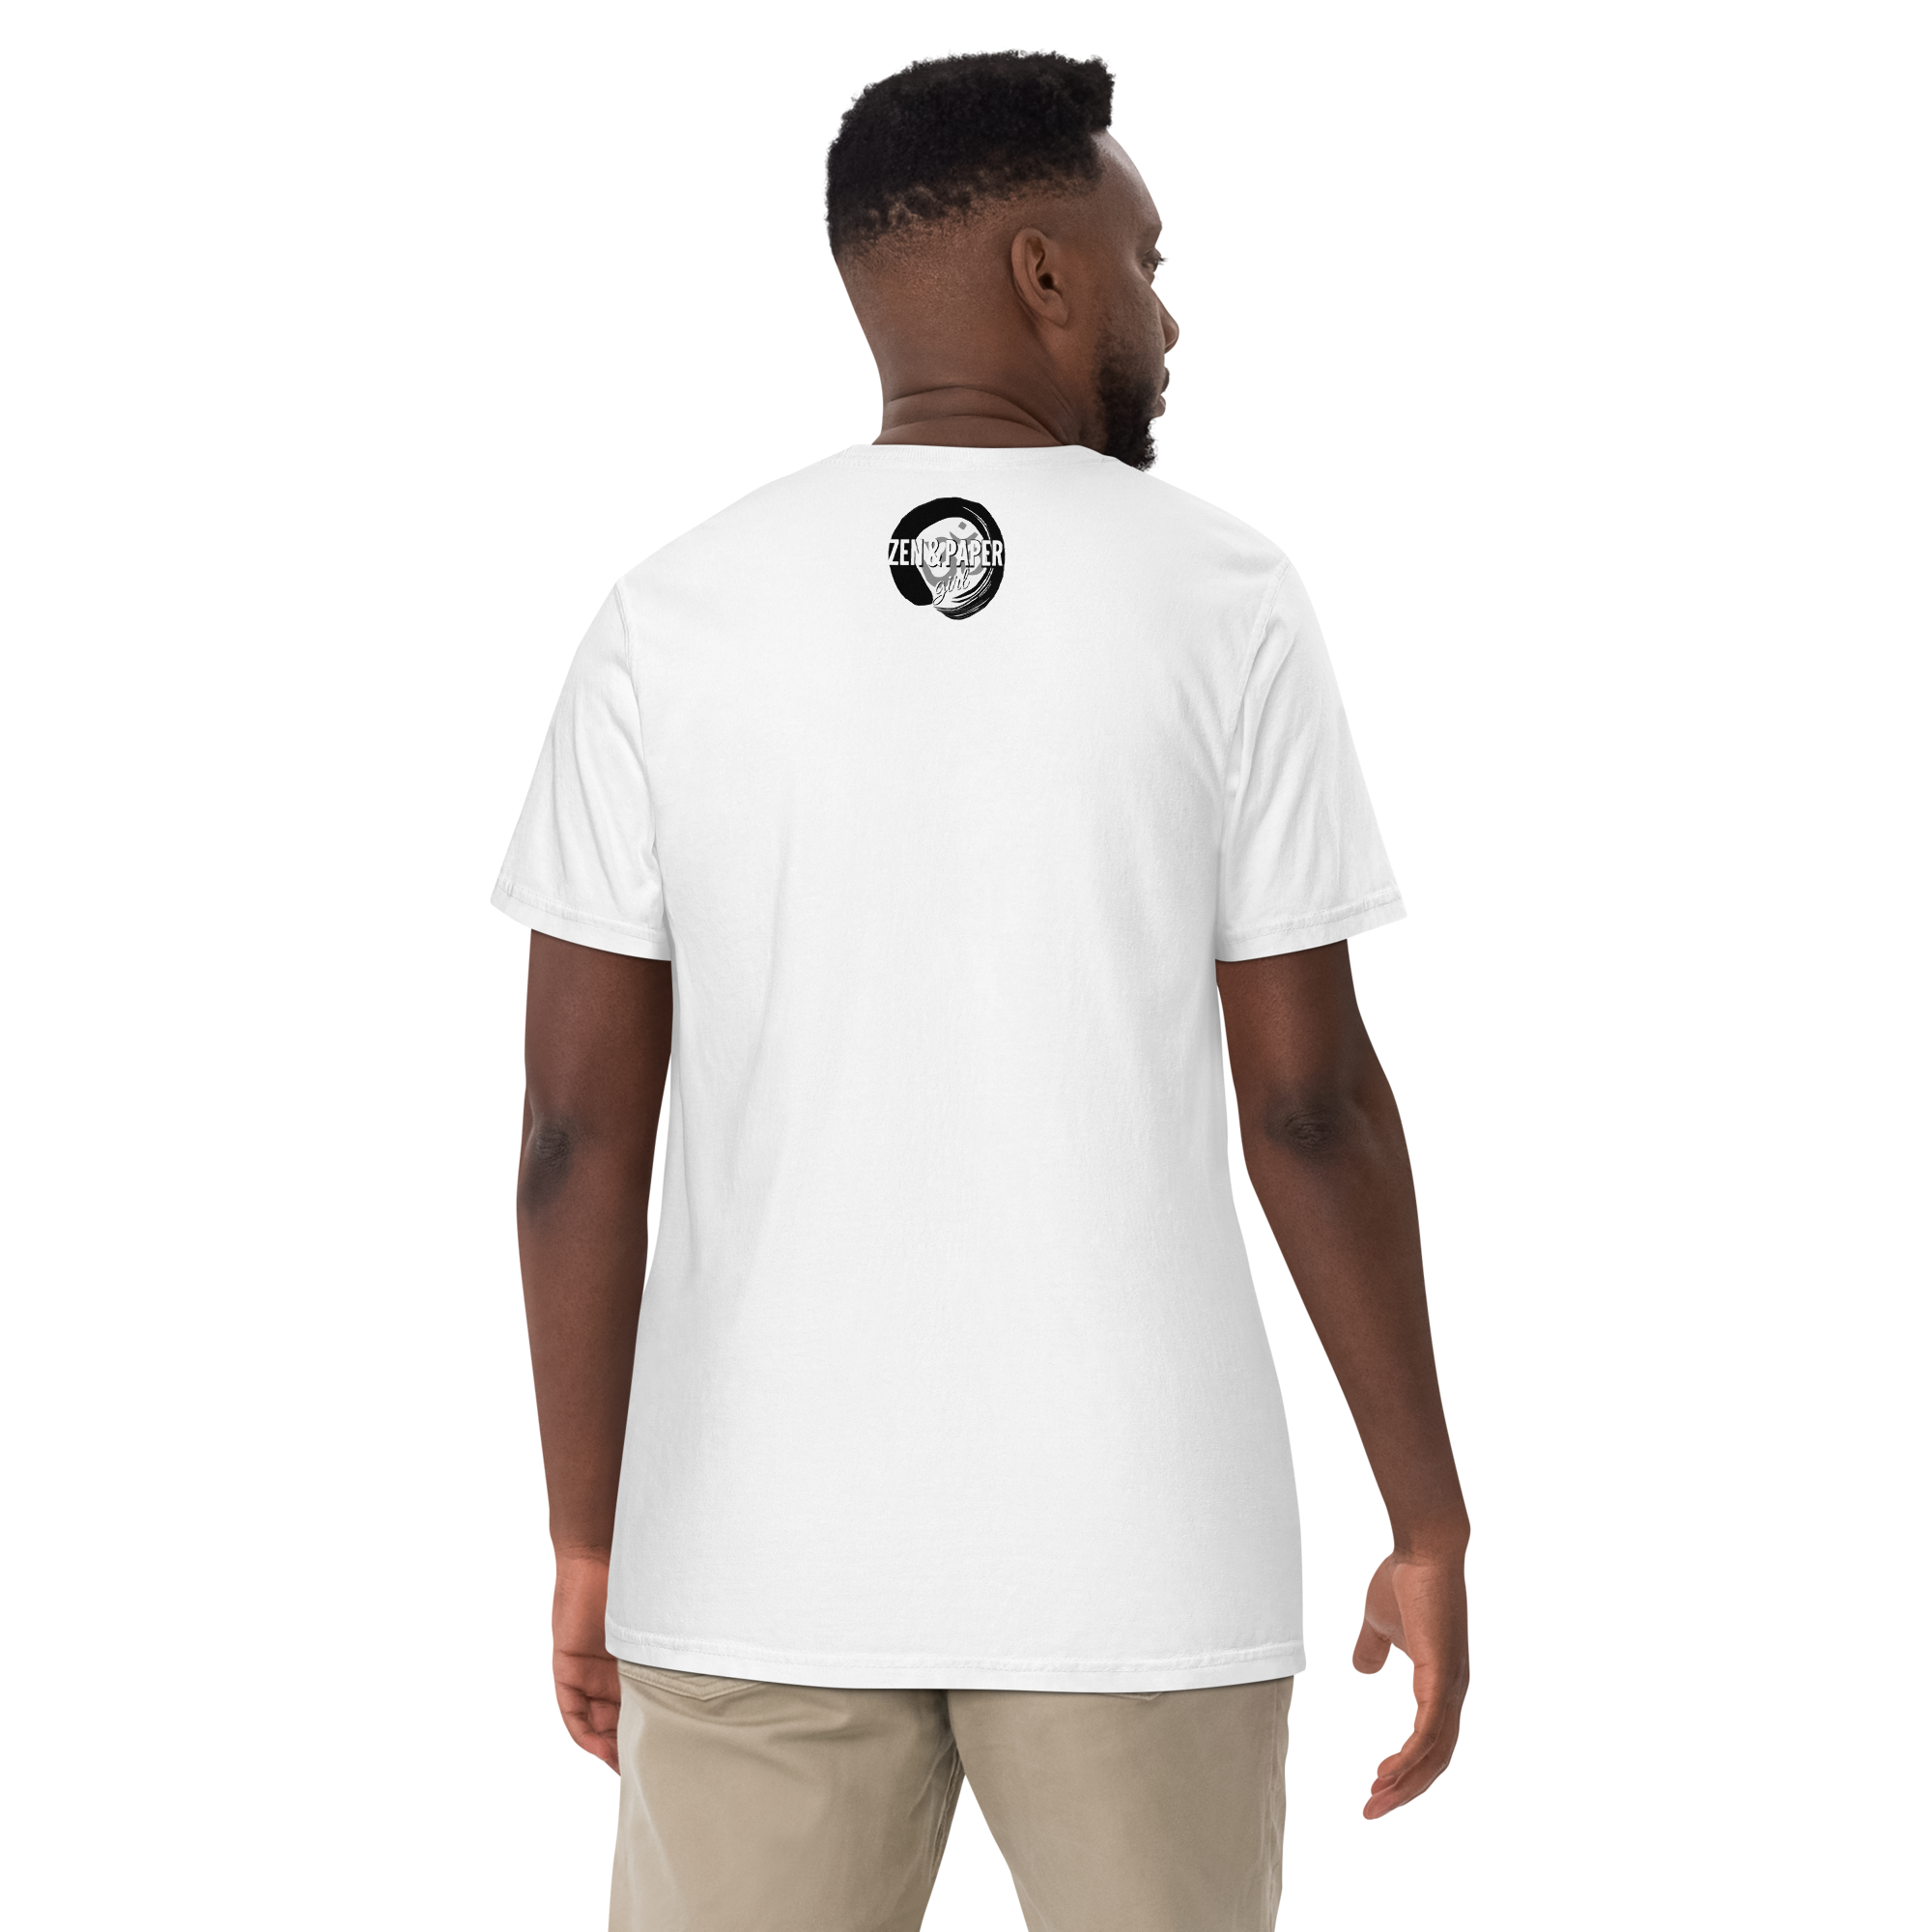 ZPG Africa On The Brain Premium Over-Sized Genderless T-Shirt